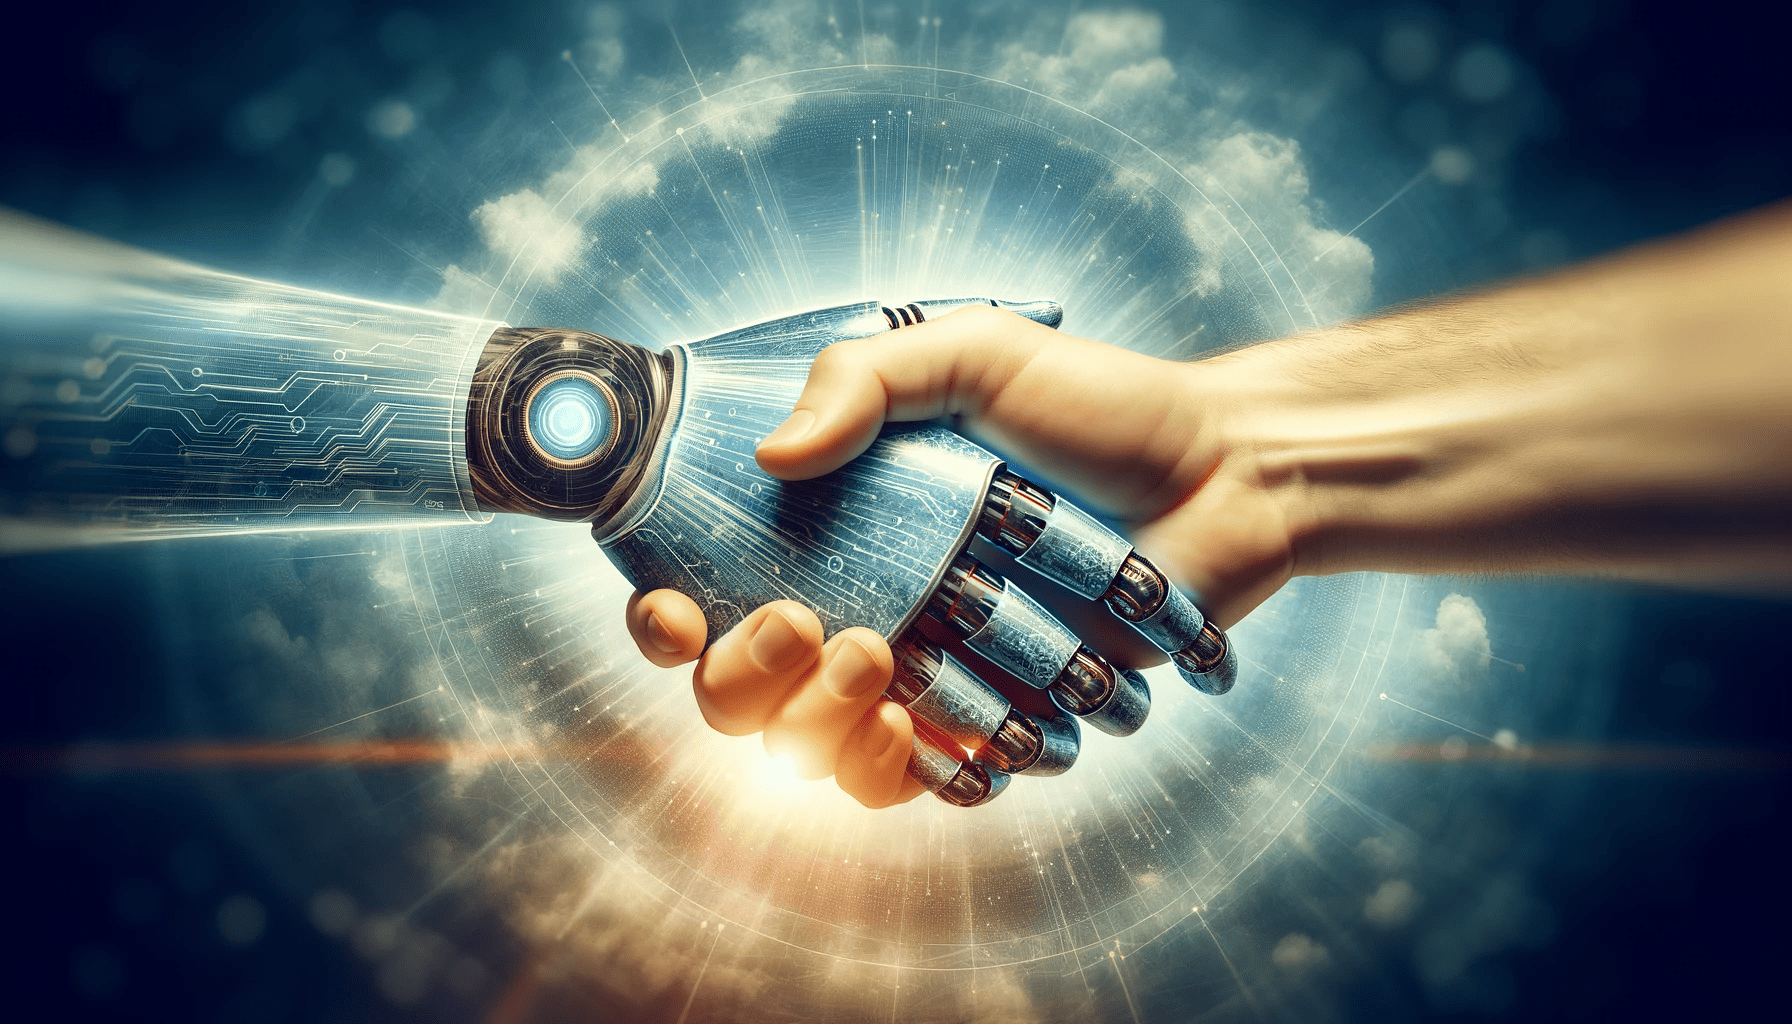 et-symbolsk-håndtryk-mellem-en-menneskehånd-og-en-digital-robot-hånd-repræsenterer-samarbejdet-mellem-mennesker-og-AI